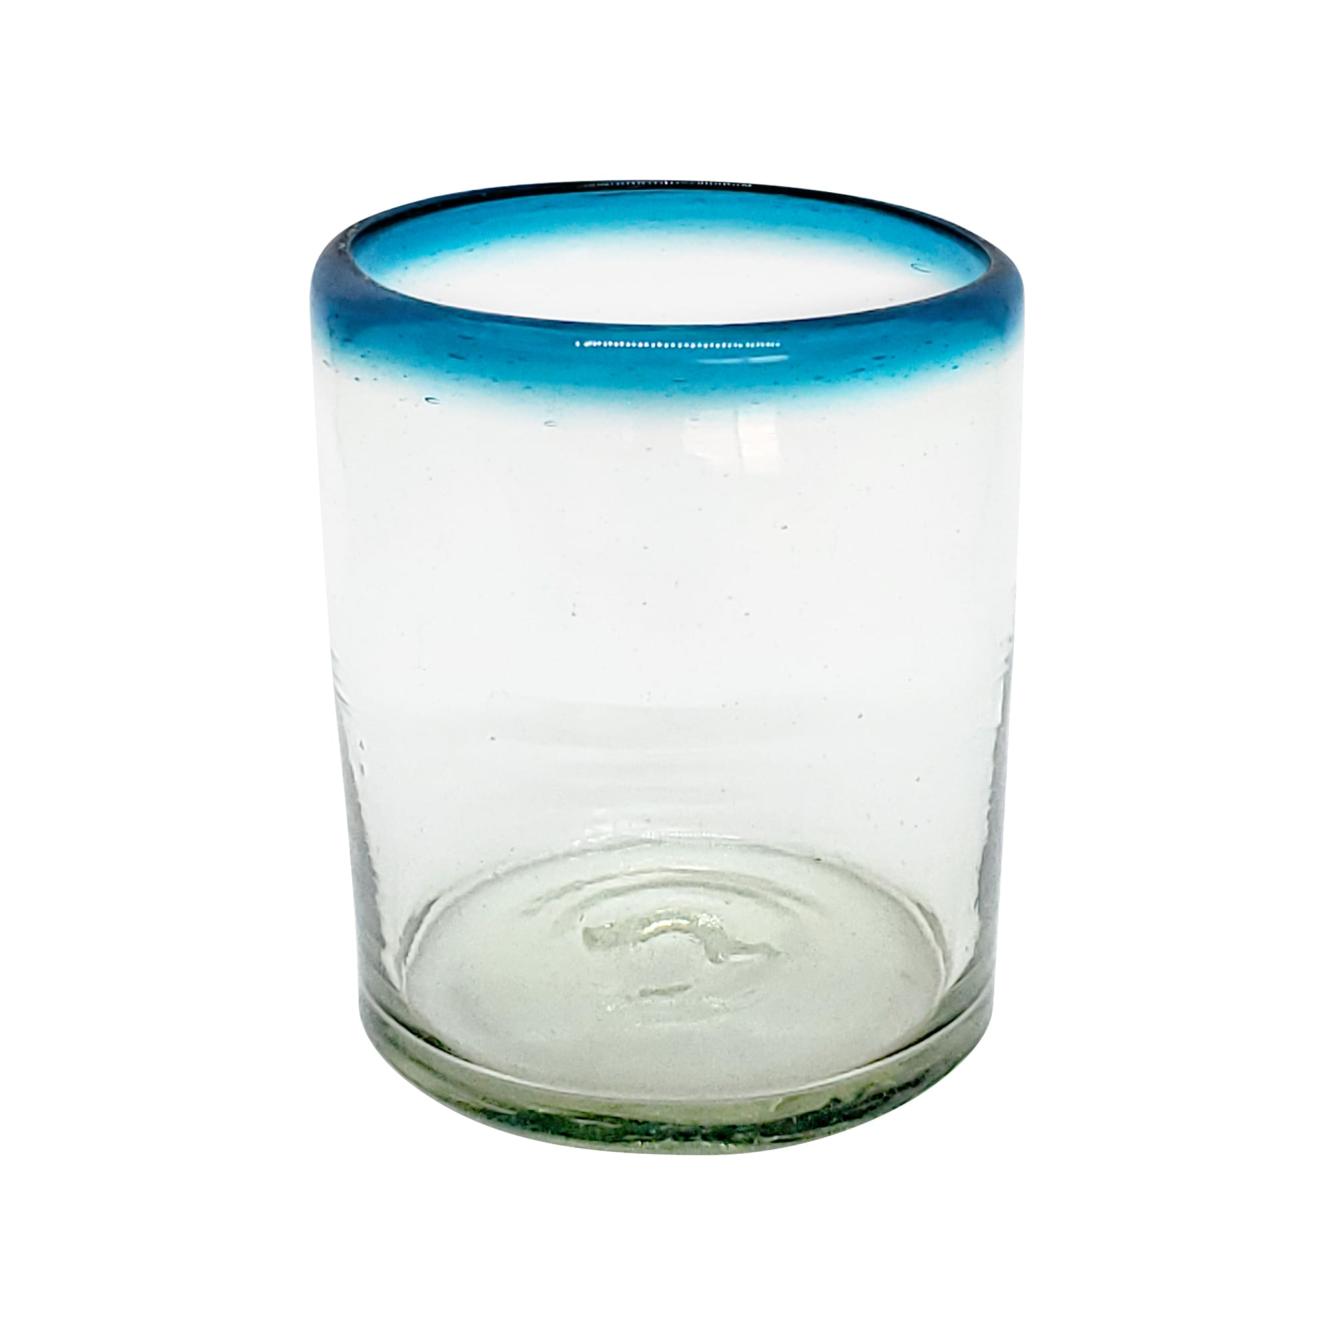 Borde de Color al Mayoreo / vasos chicos con borde azul aqua, 10 oz, Vidrio Reciclado, Libre de Plomo y Toxinas / stos vasos chicos son un gran complemento para su juego de jarra y vasos grandes.